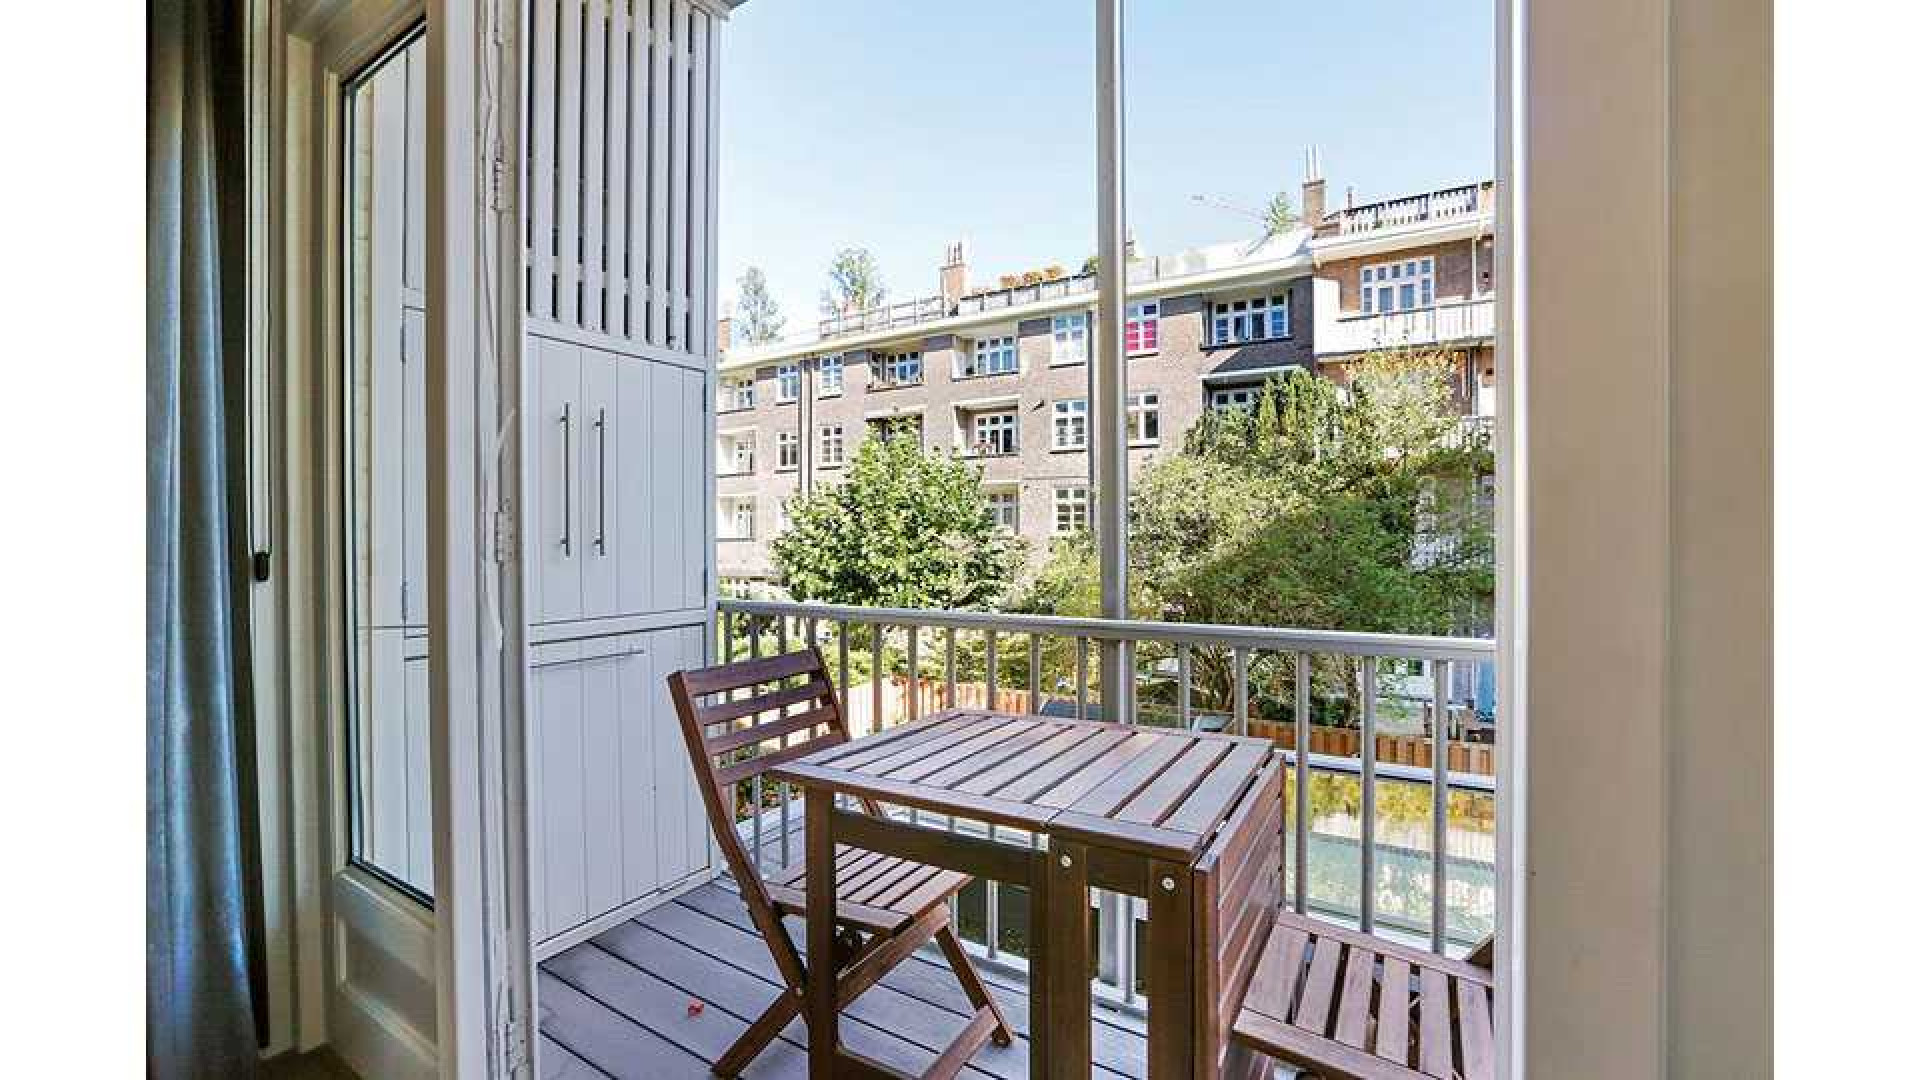 Marvin Breukhoven zoekt huurder voor zijn luxe driekamer appartement in Amsterdam Zuid. Zie foto's